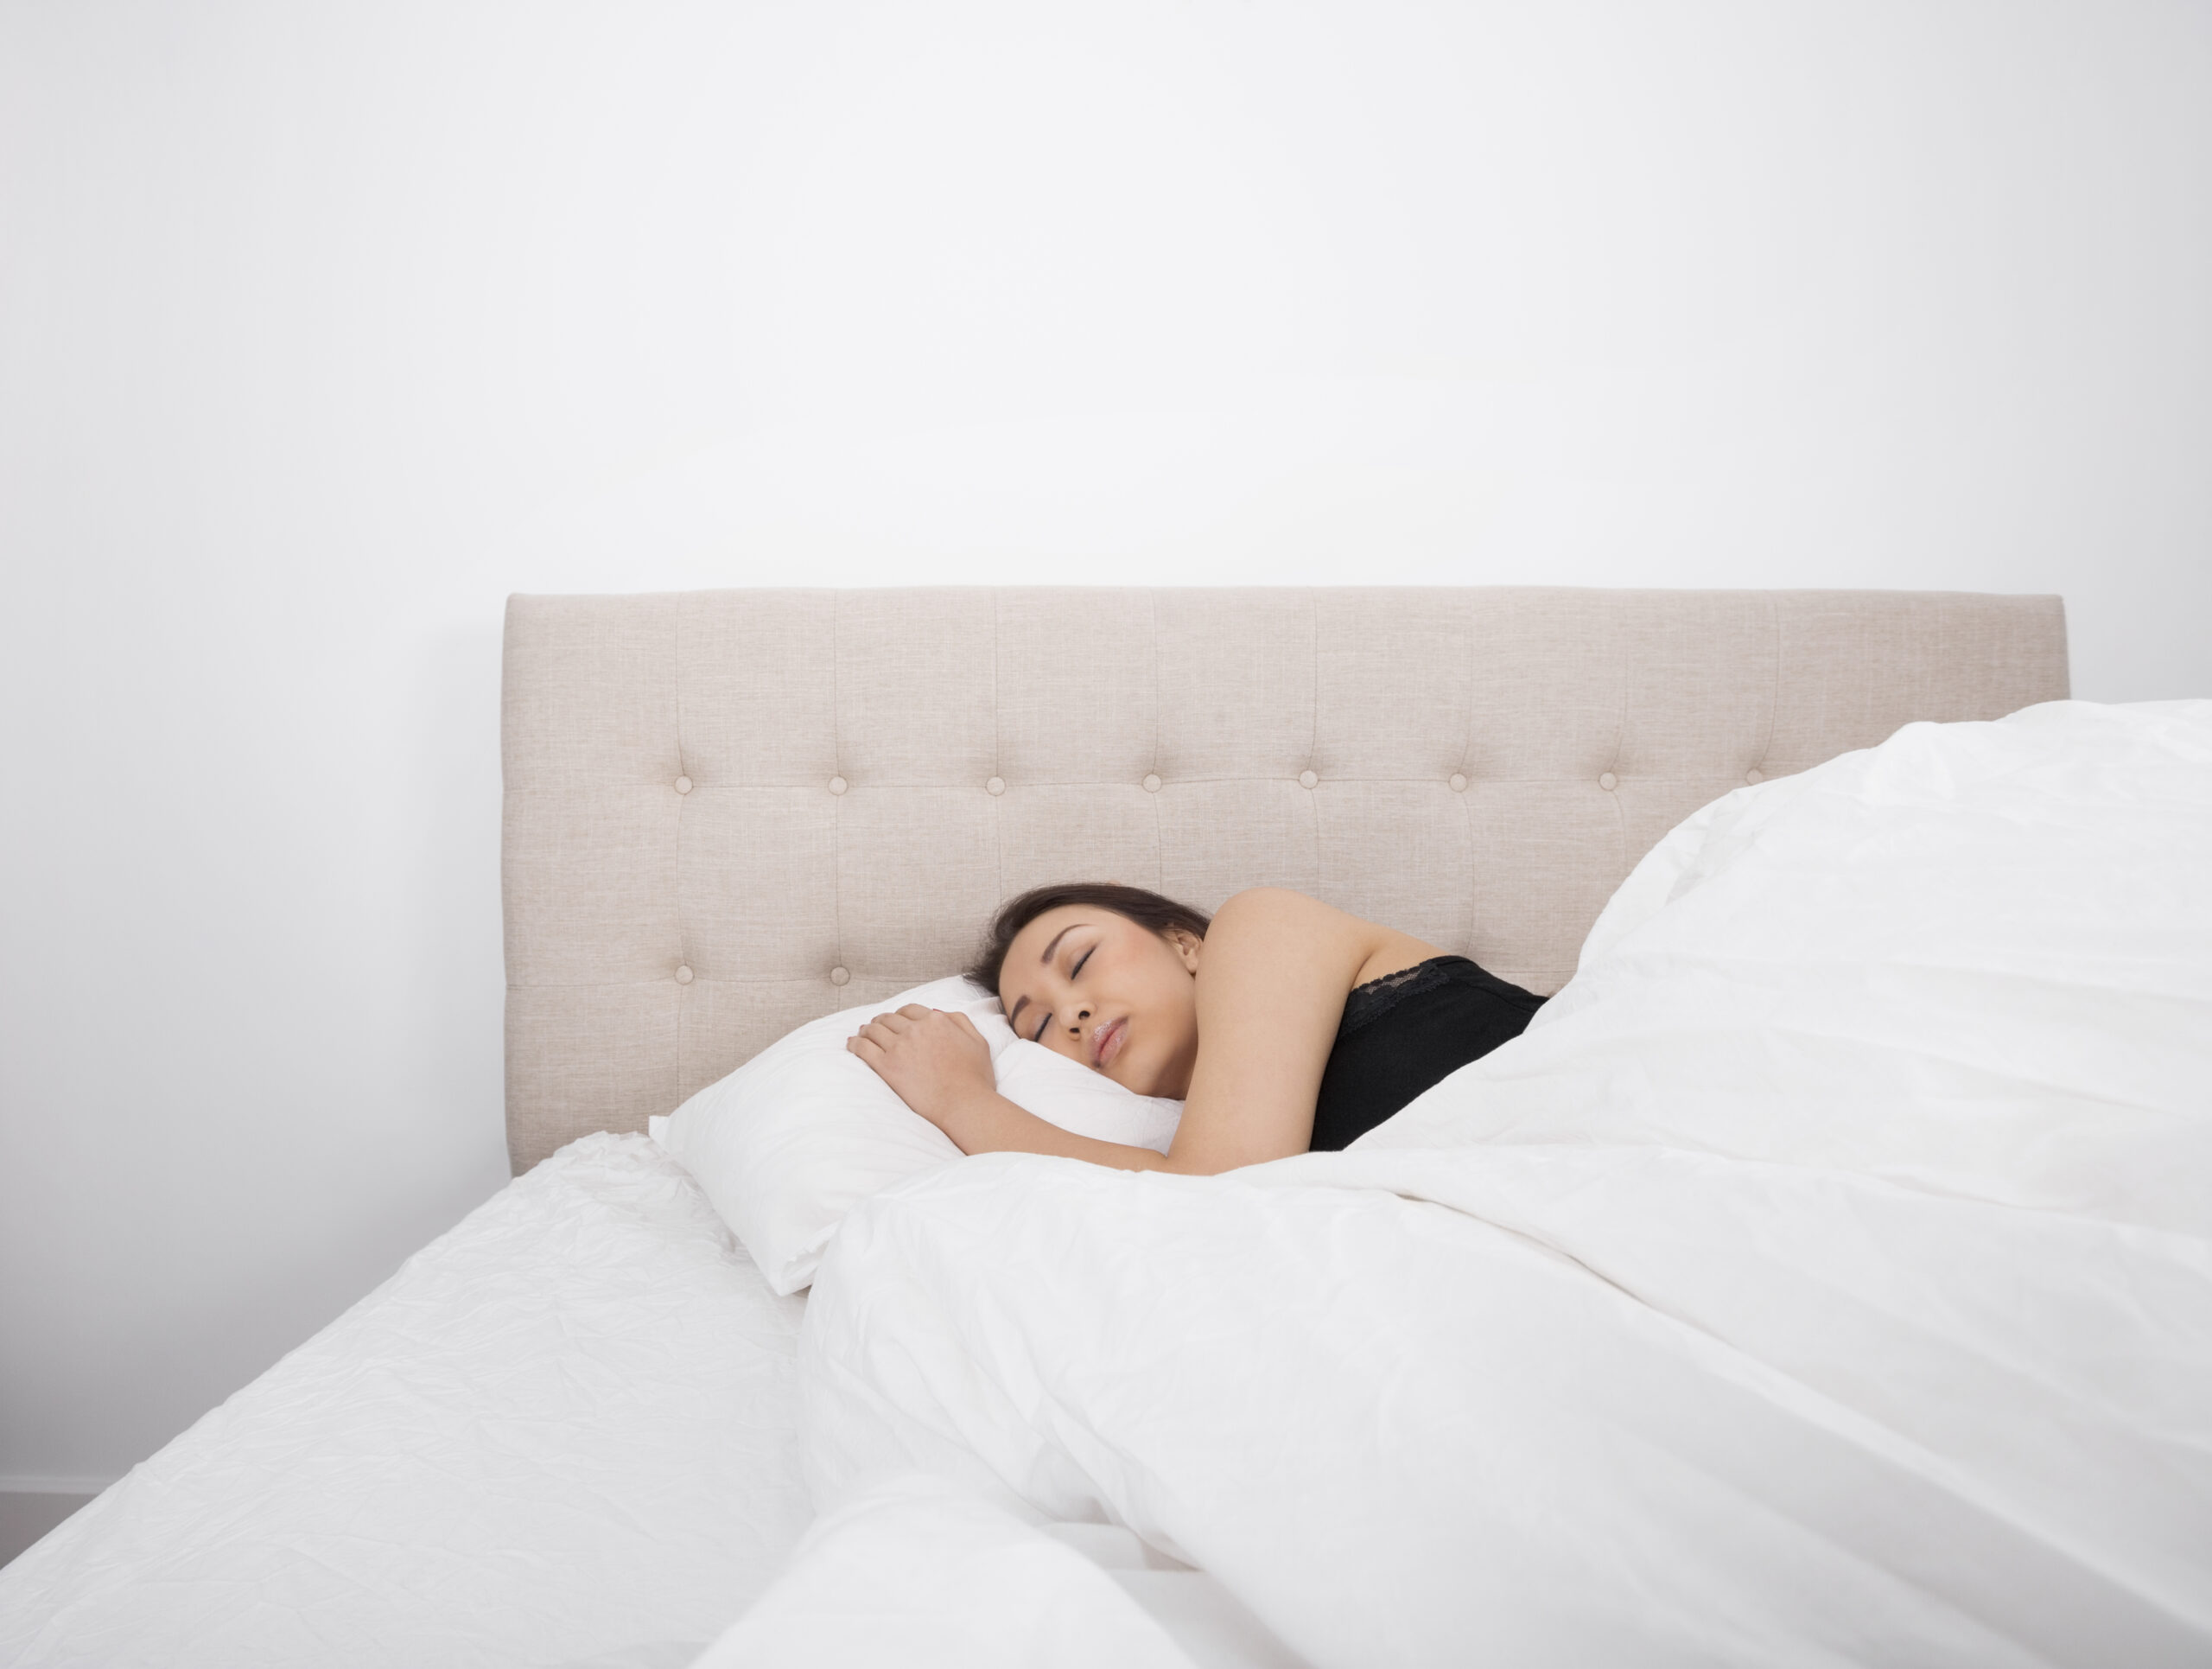 Ways to Treat Sleep Apnea Naturally